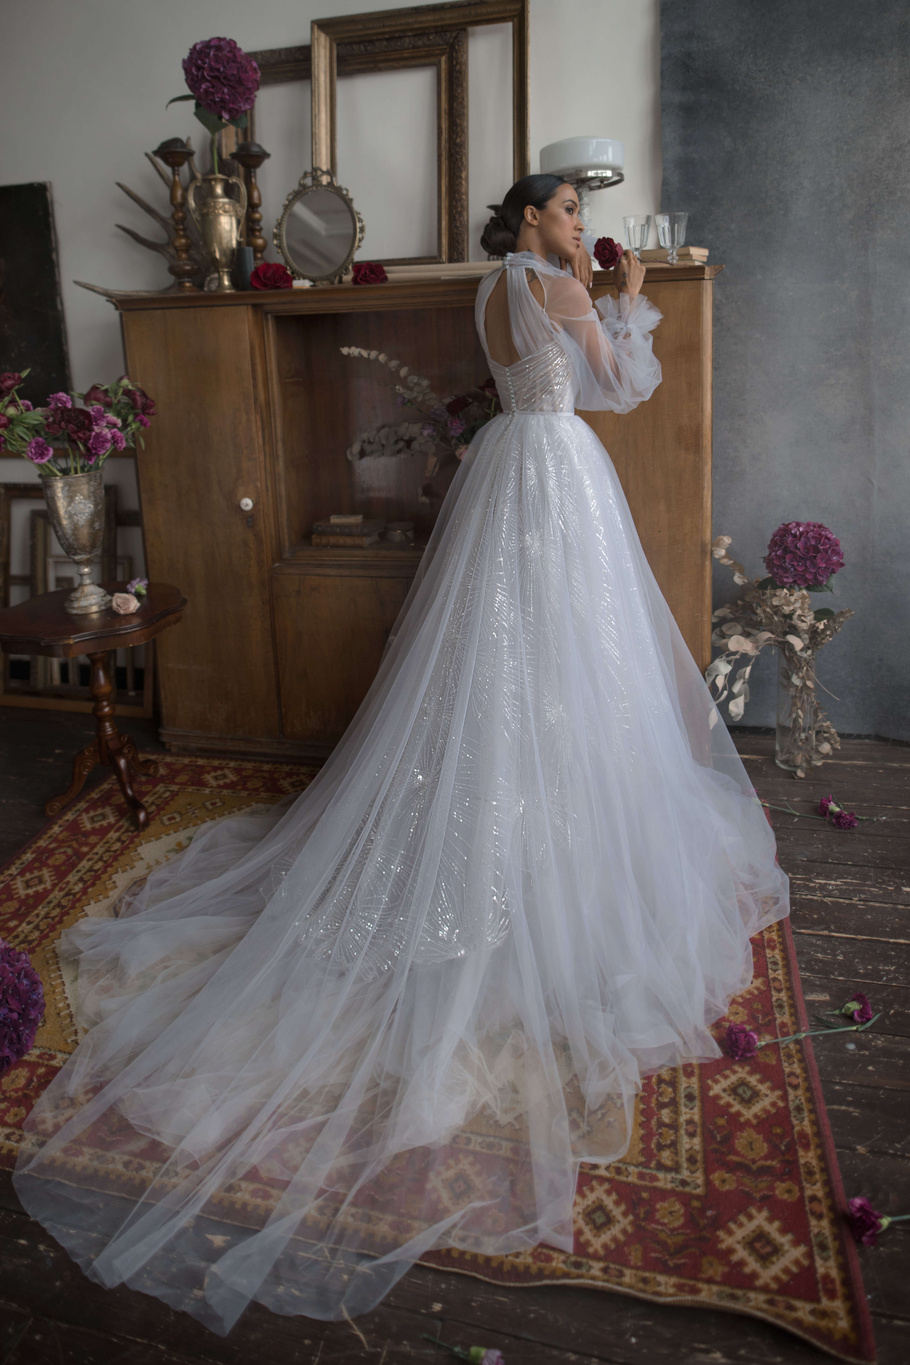 Купить свадебное платье «Остин» Бламмо Биамо из коллекции Нимфа 2020 года в Санкт-Петербурге